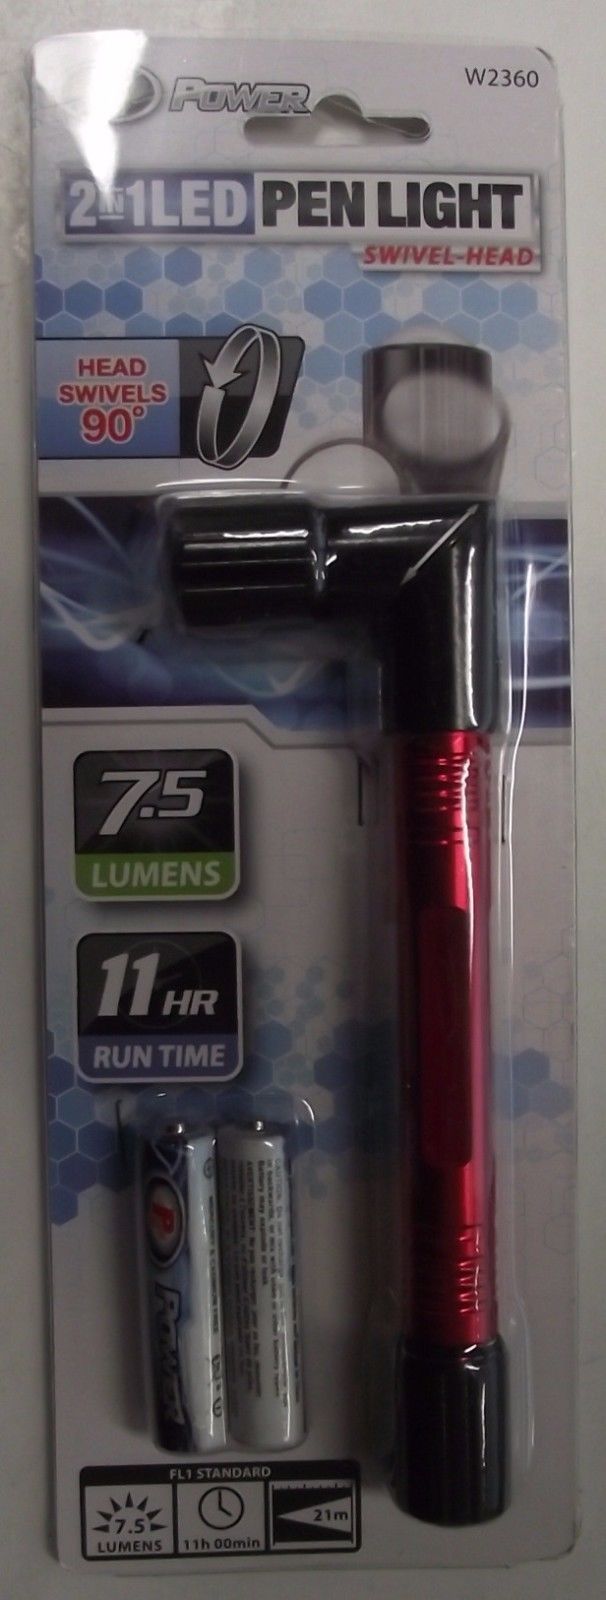 Performance Tool  W2360 2 IN 1 Swivel Head Led Pen Light